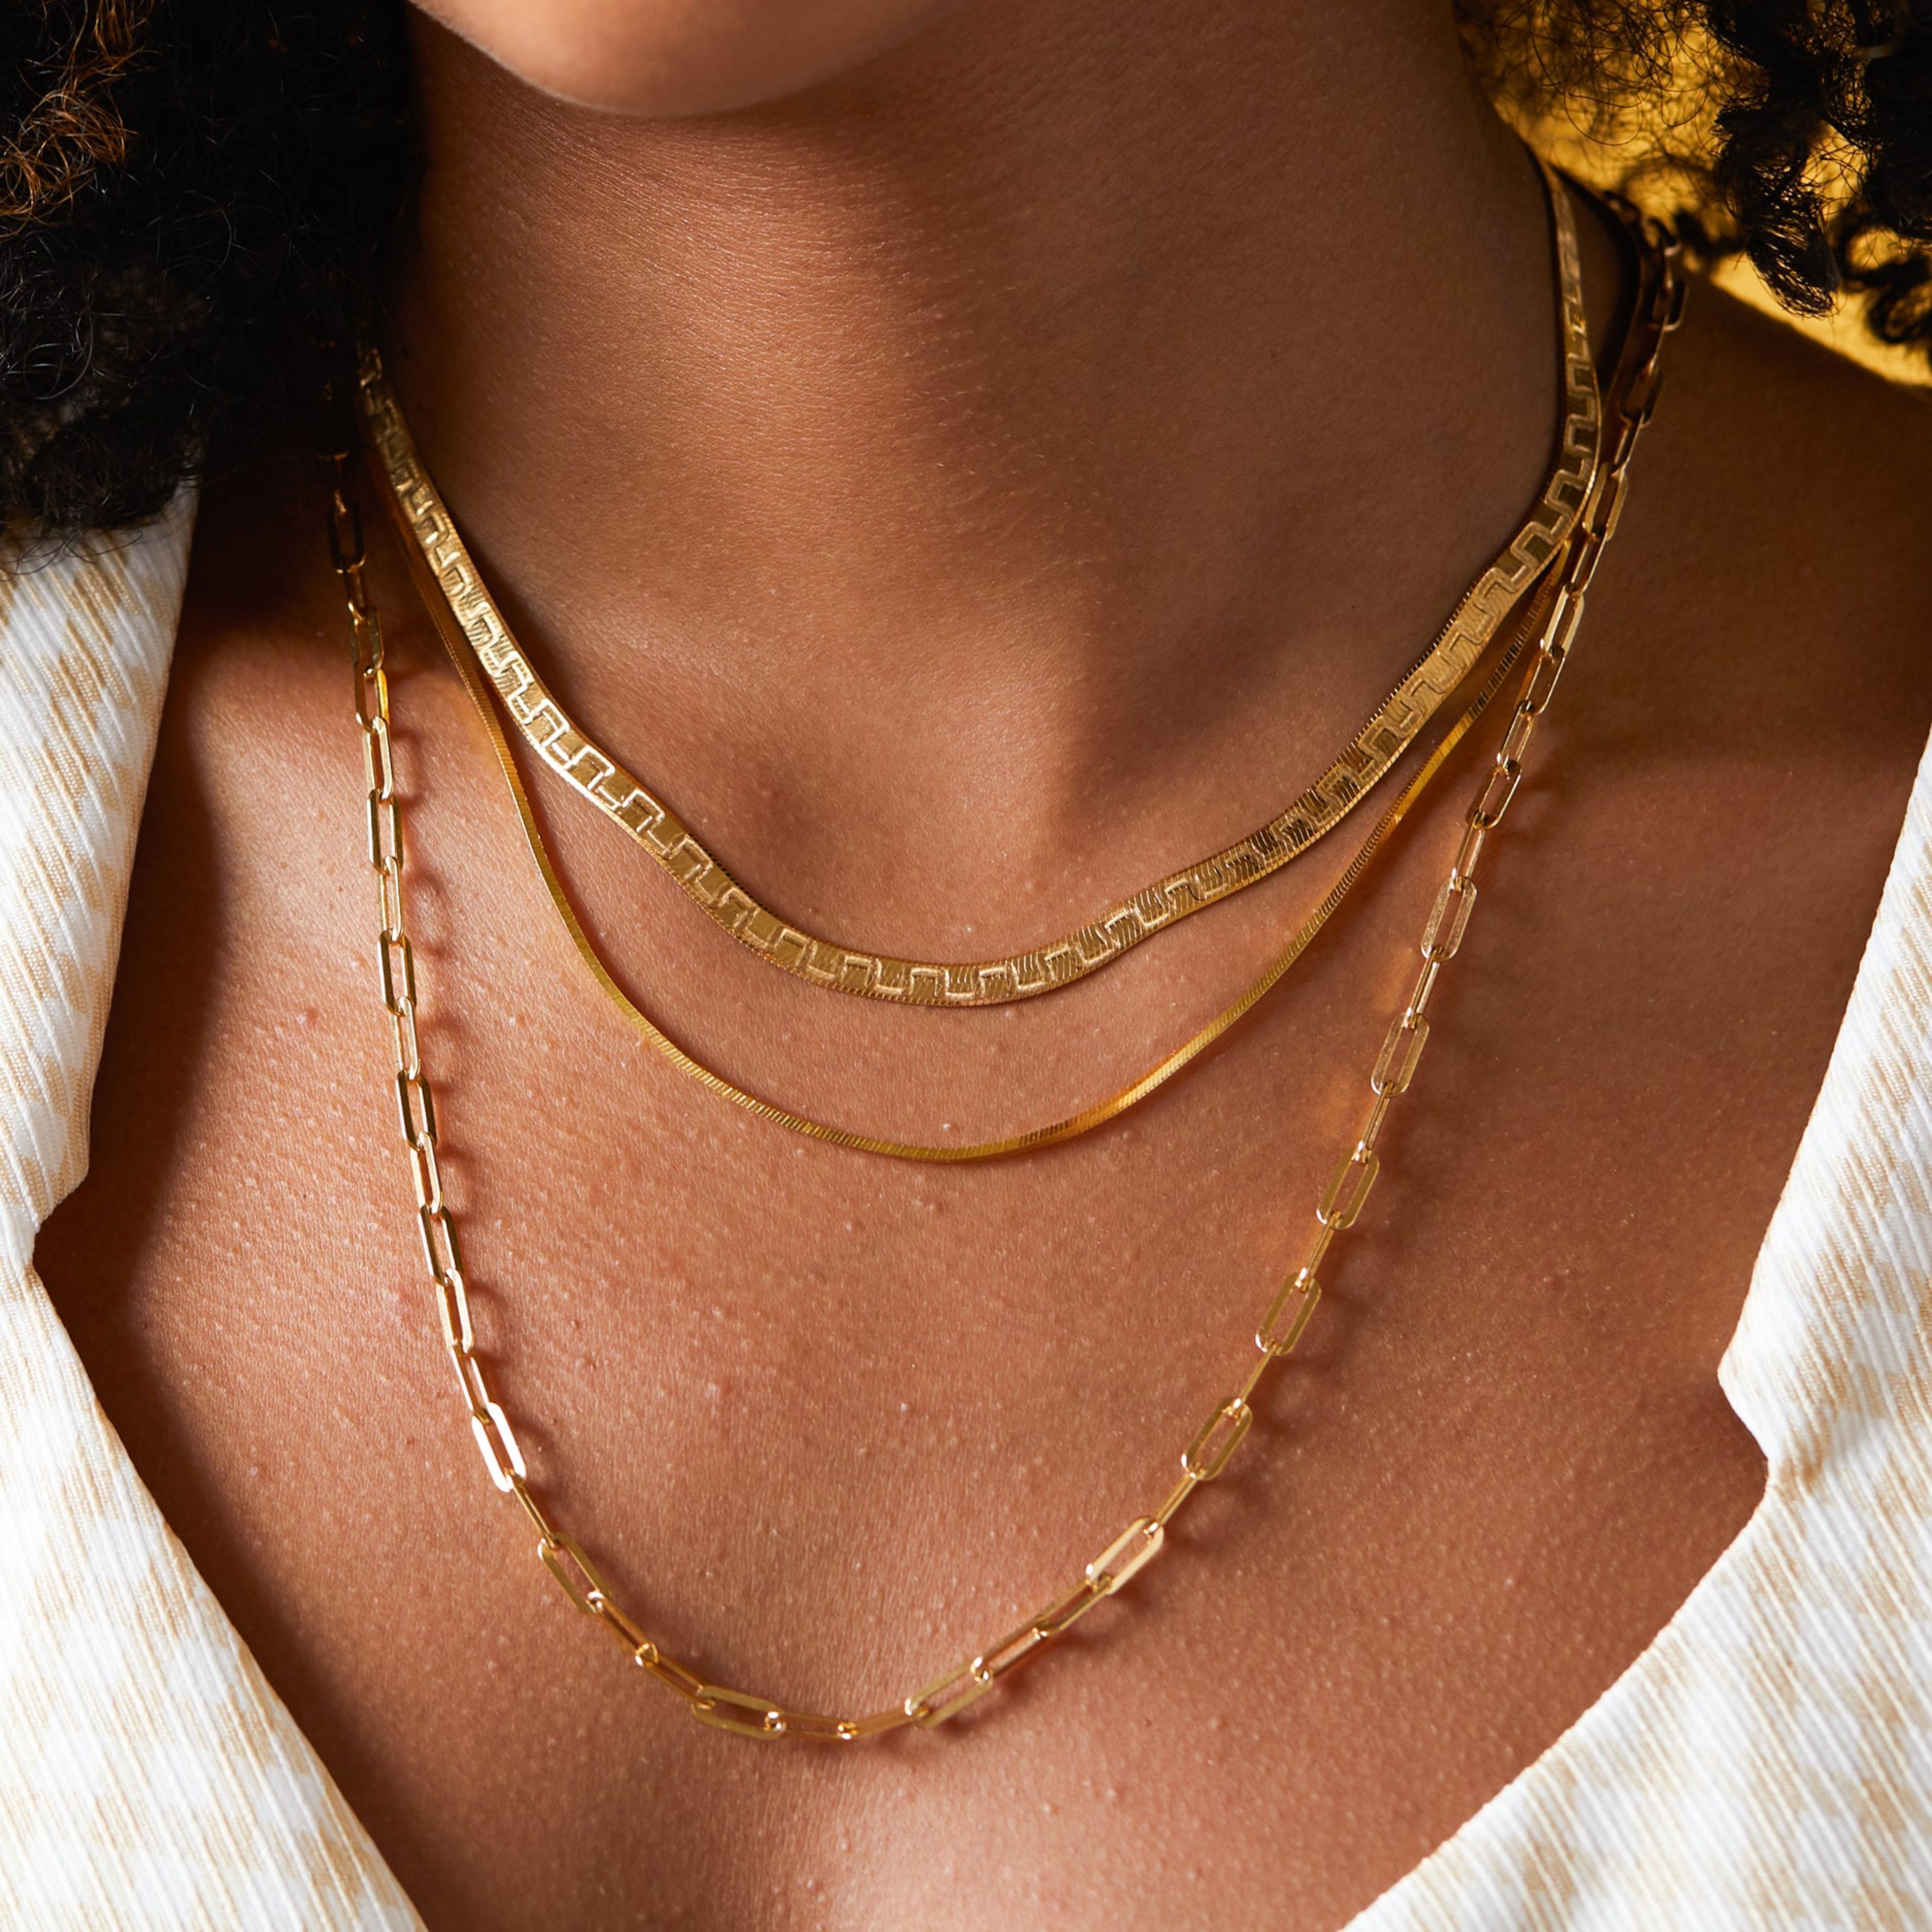 Herringbone Chain Necklace Greek